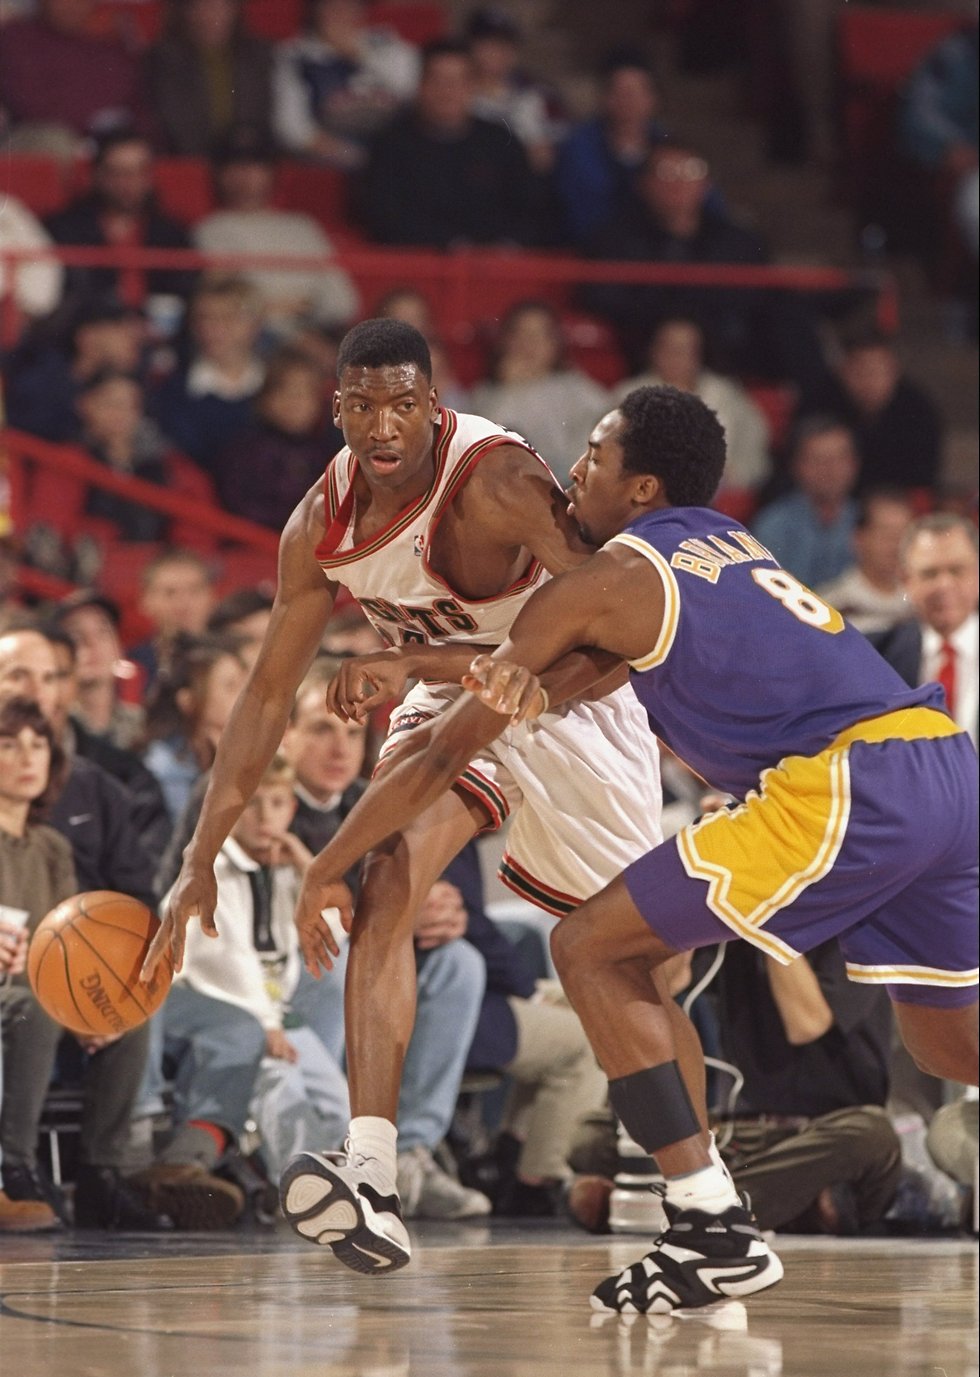 הוא הגיע ל-NBA ישירות מהתיכון ונבחר במקום ה-13 בדראפט 96/97 (צילום: getty images) (צילום: getty images)